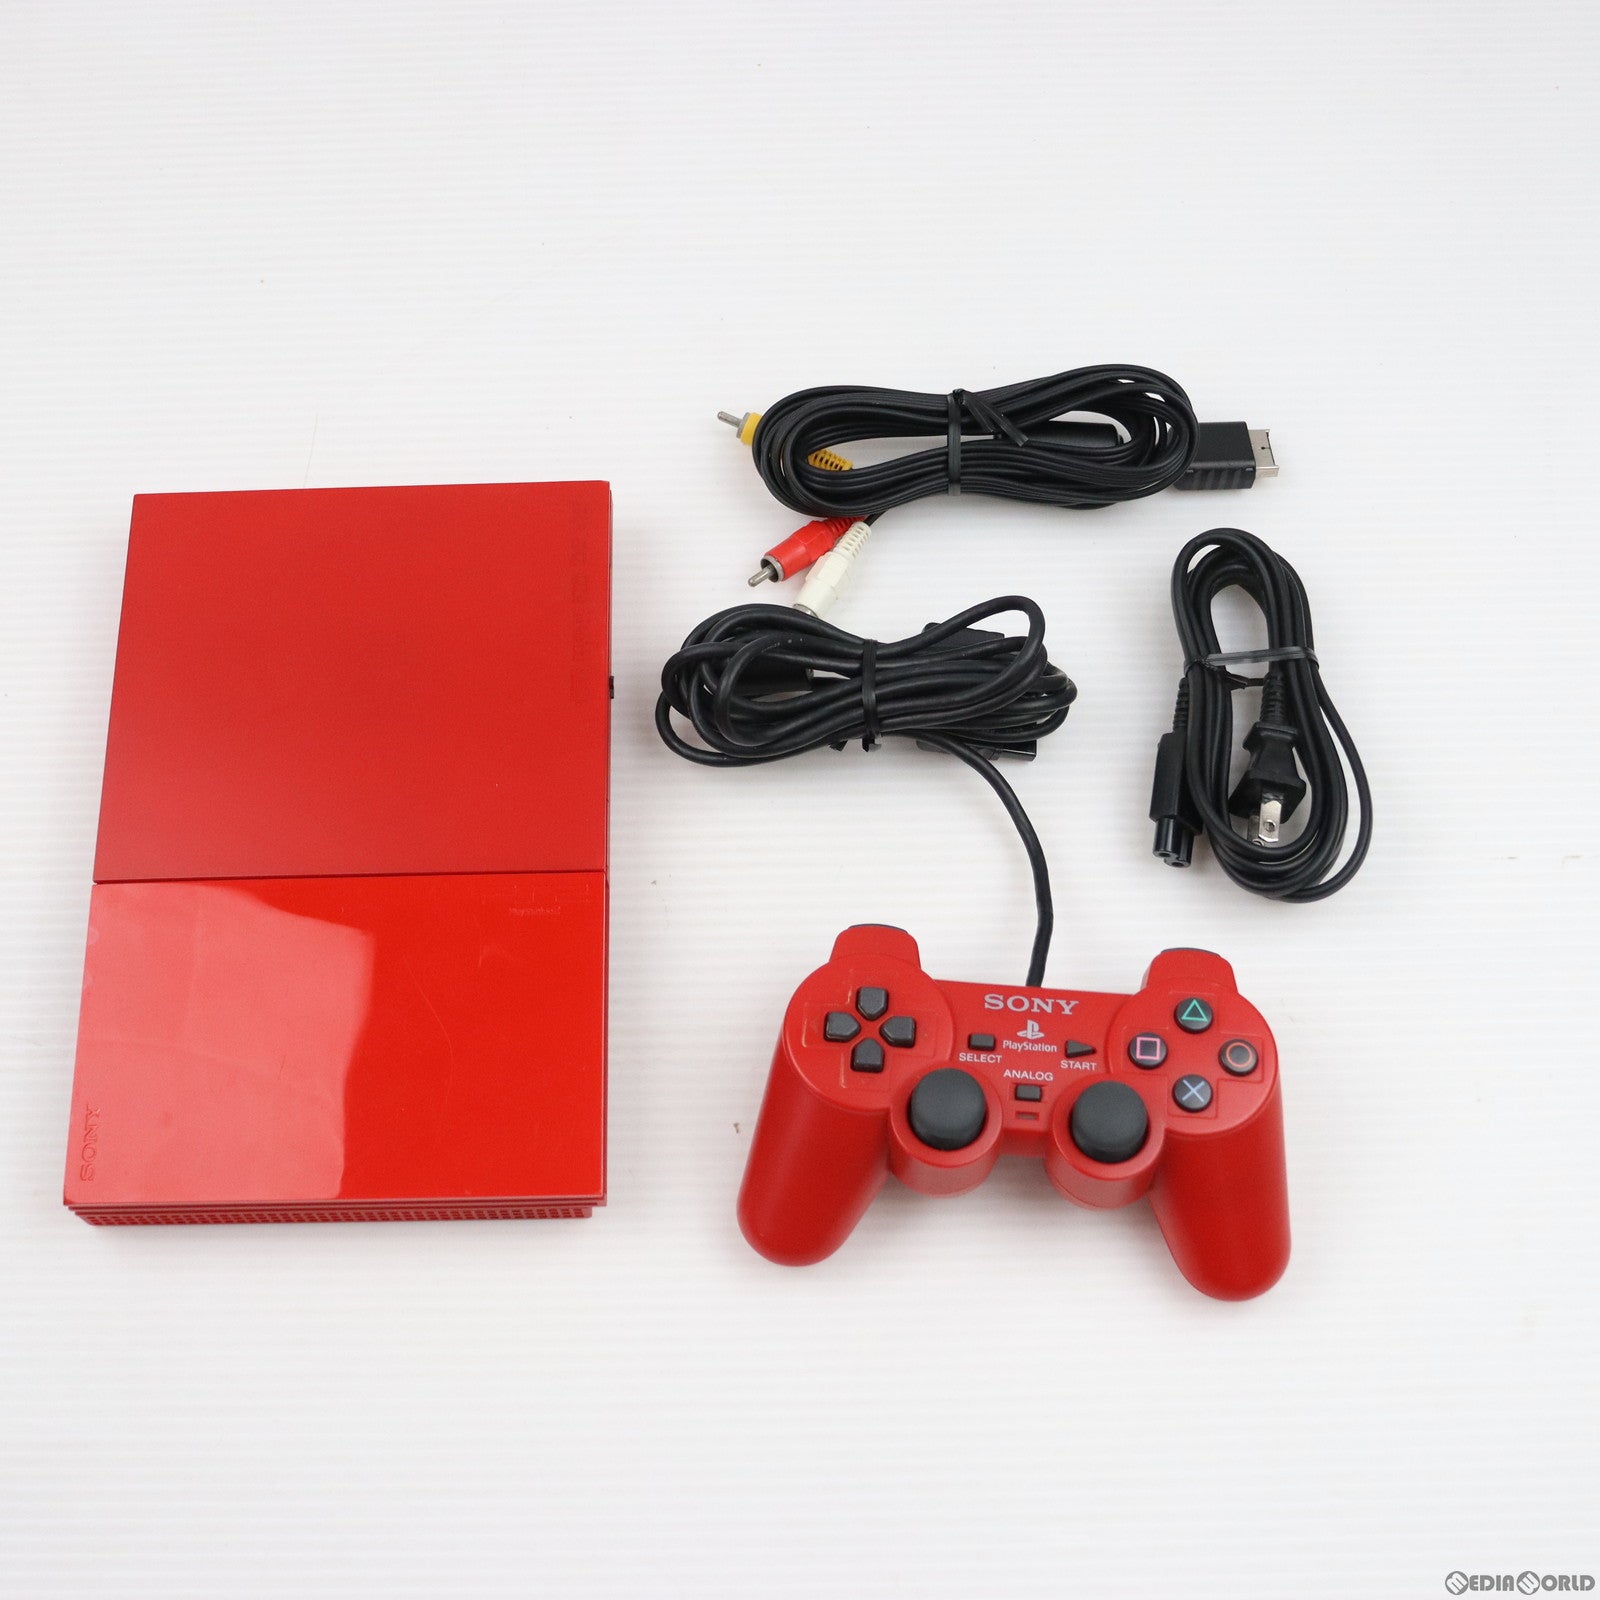 【中古即納】[本体][PS2]プレイステーション2 PlayStation2 シナバー・レッド(SCPH-90000CR)(20080703)